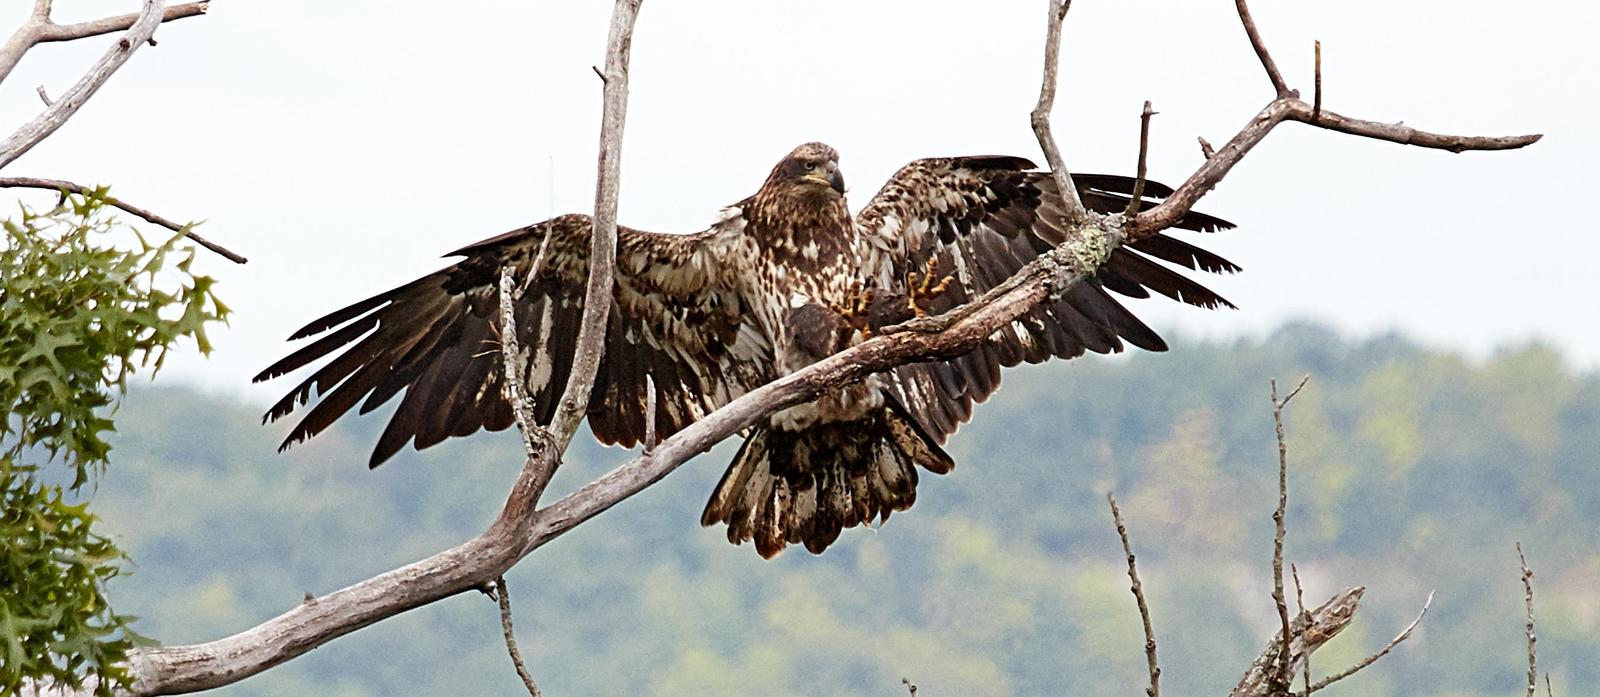 Bald Eagle Photo by Jim Werkowski